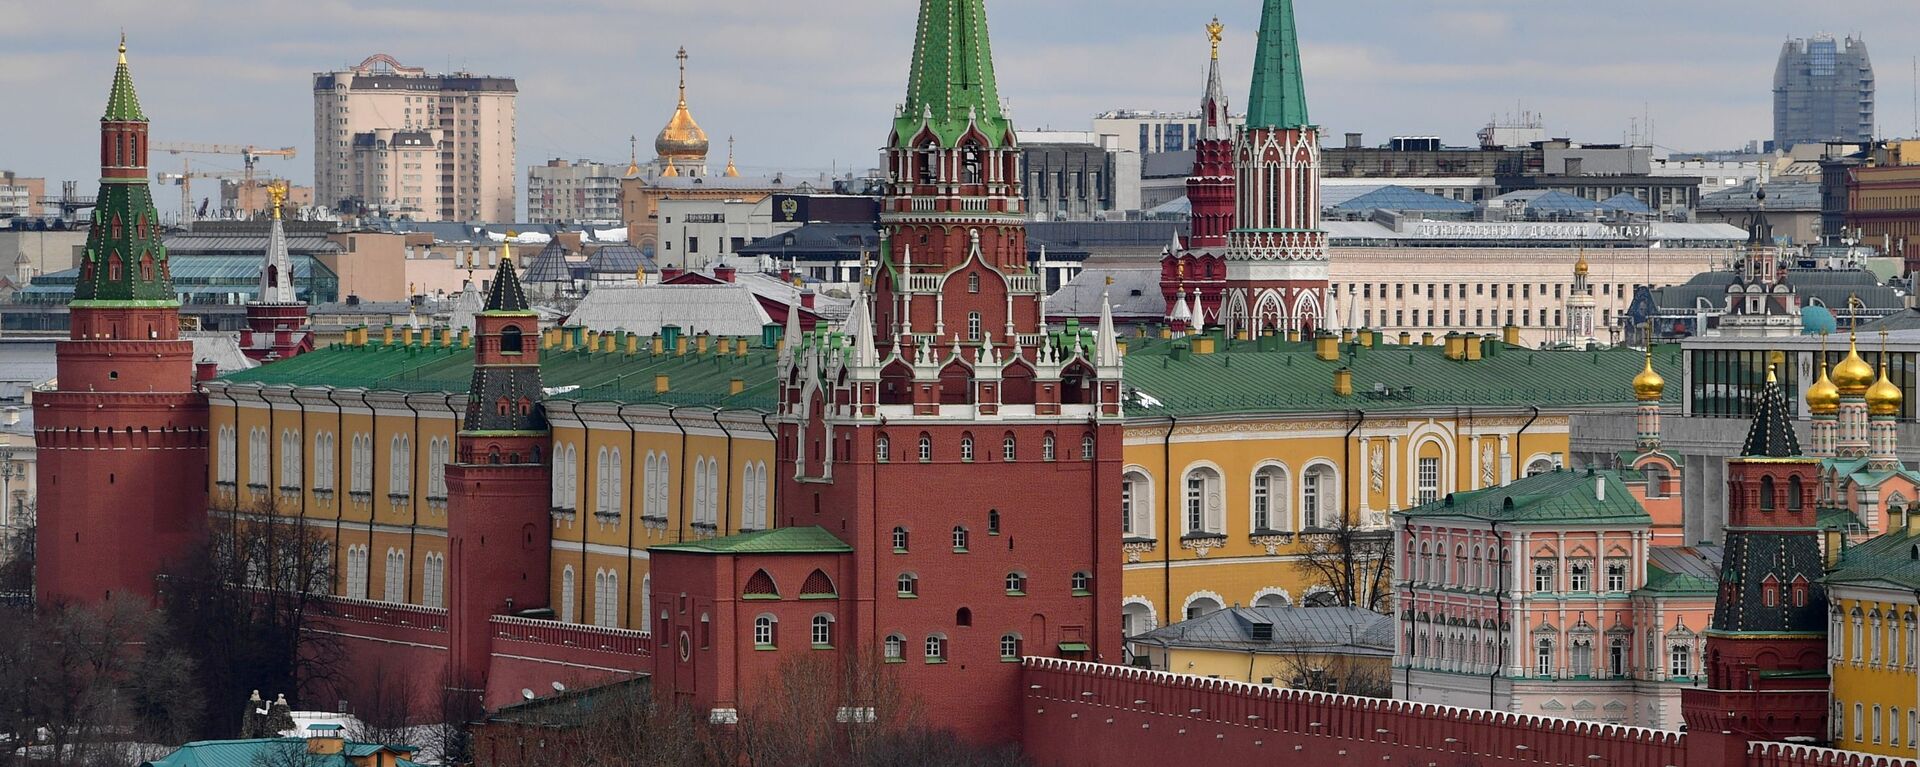 Quang cảnh các tòa tháp của Điện Kremlin ở Matxcơva. - Sputnik Việt Nam, 1920, 15.06.2021